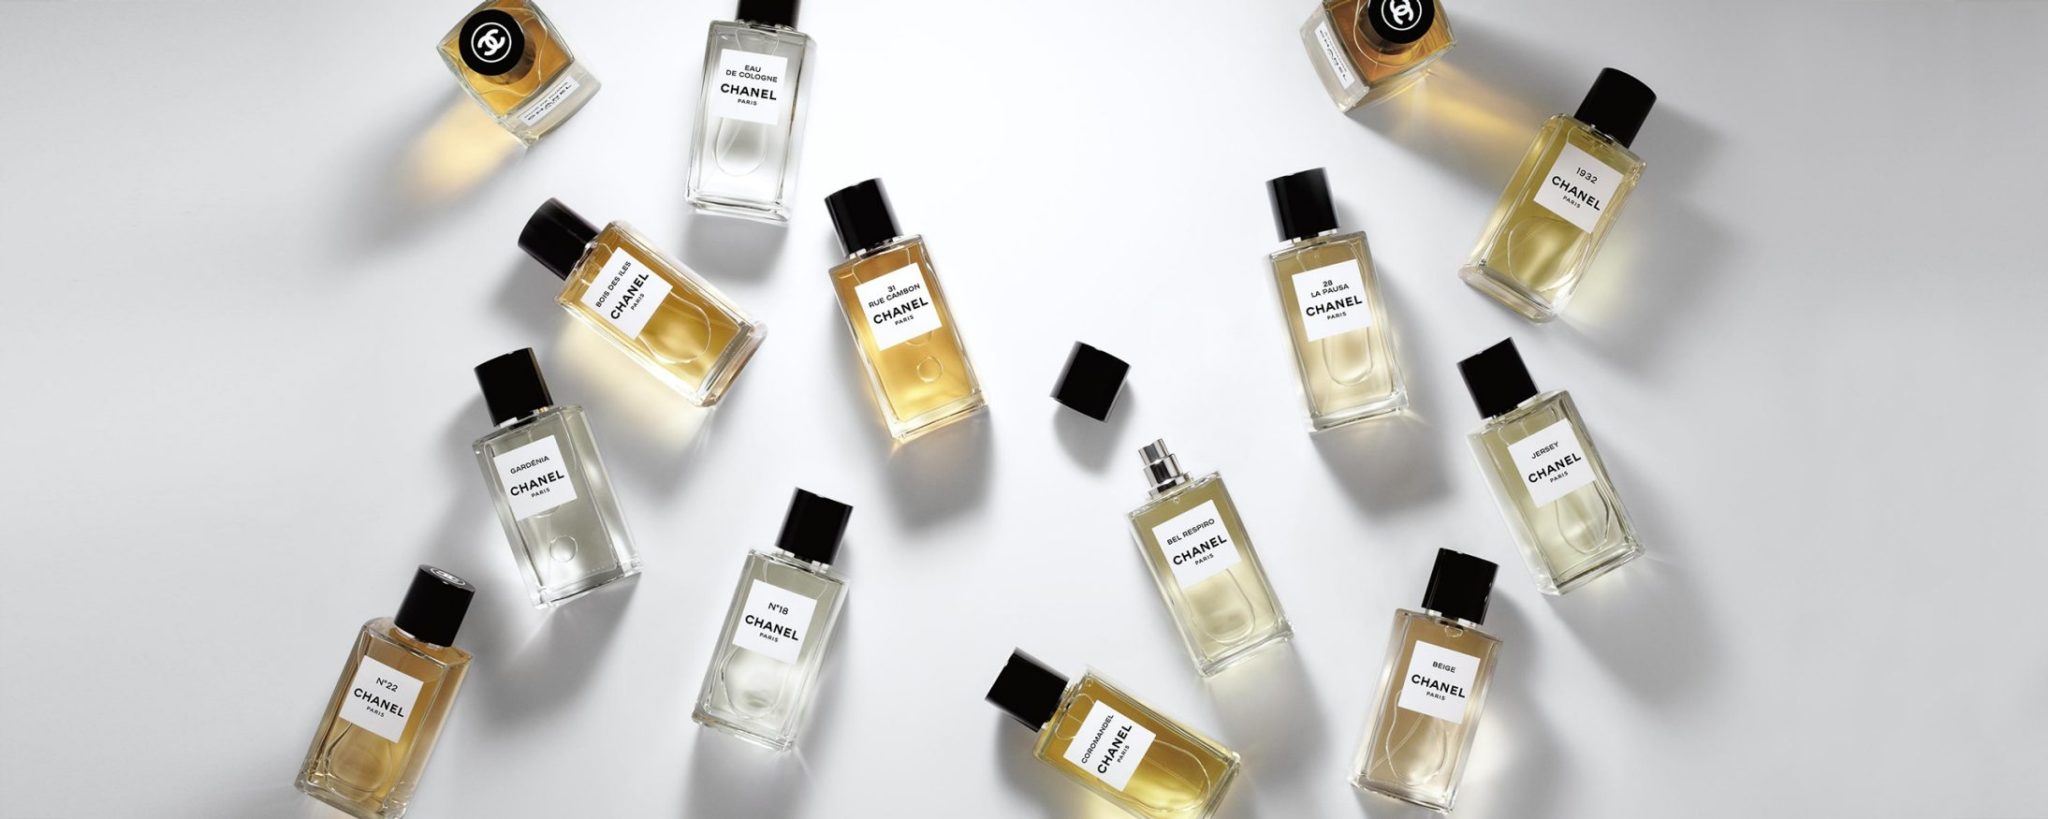 Chanel Les Exclusifs eaux de parfum Esprit de Gabrielle espritdegabrielle.com